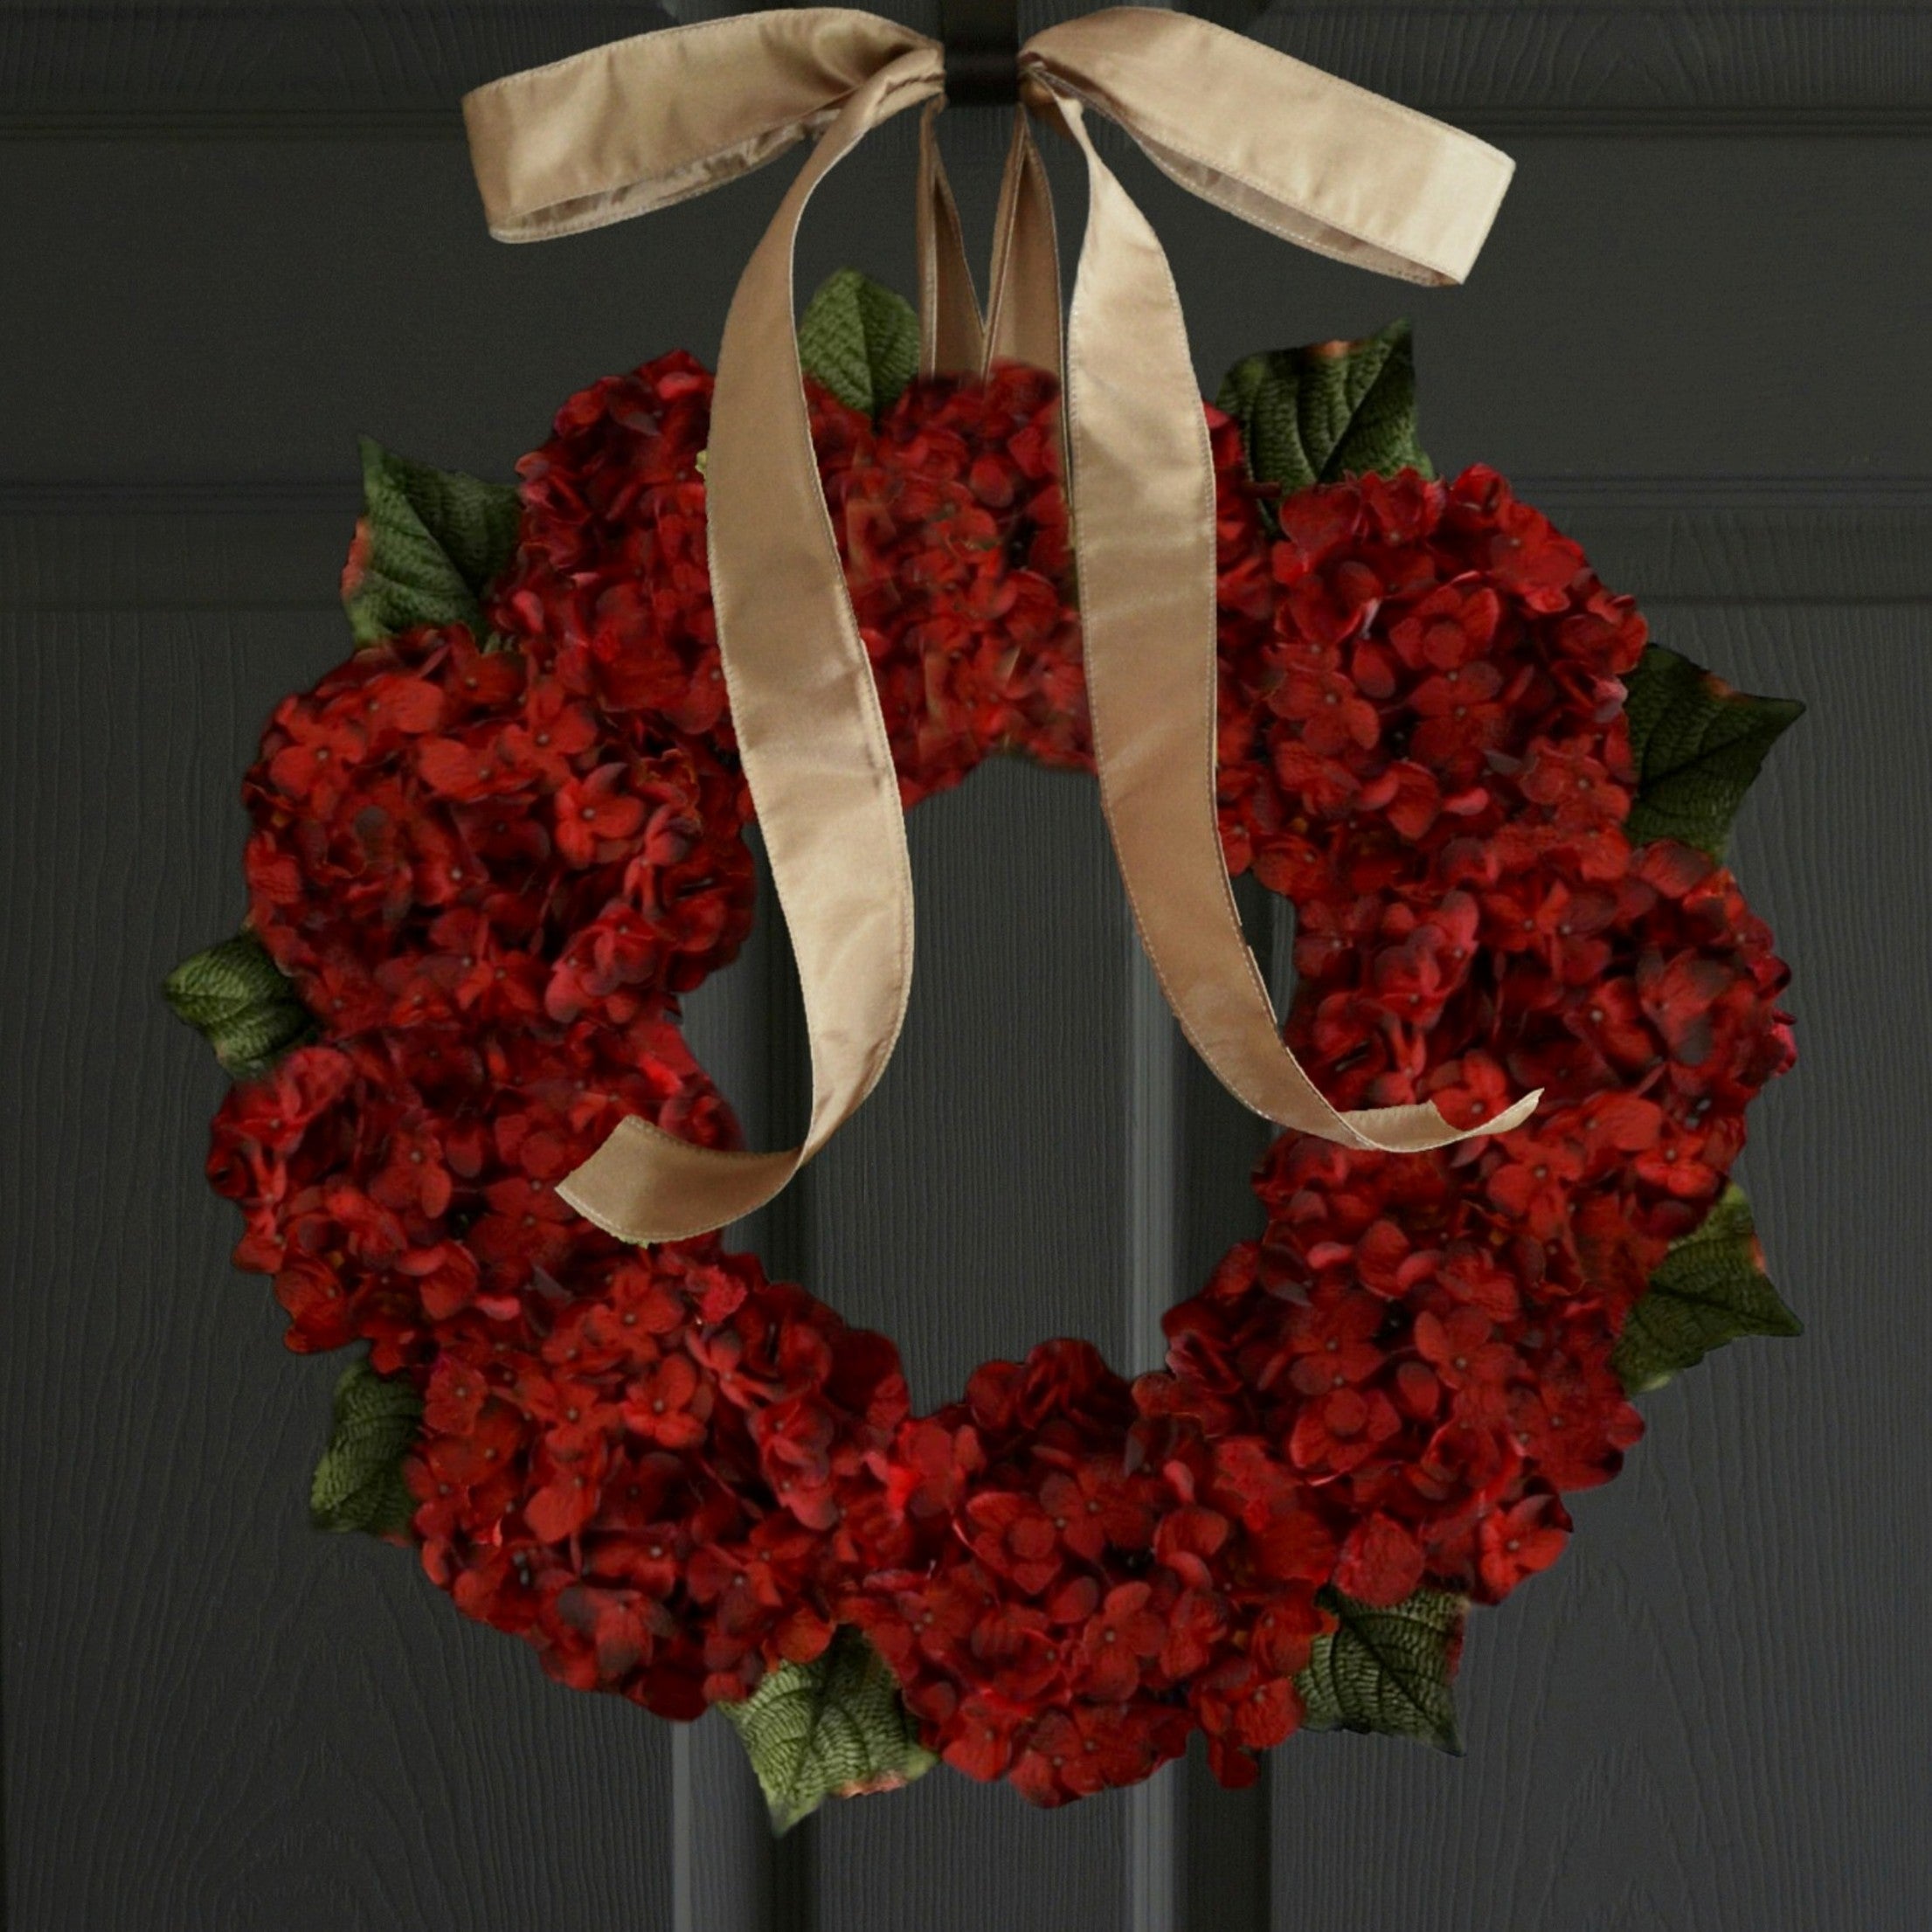 red hydrangea wreath on front door